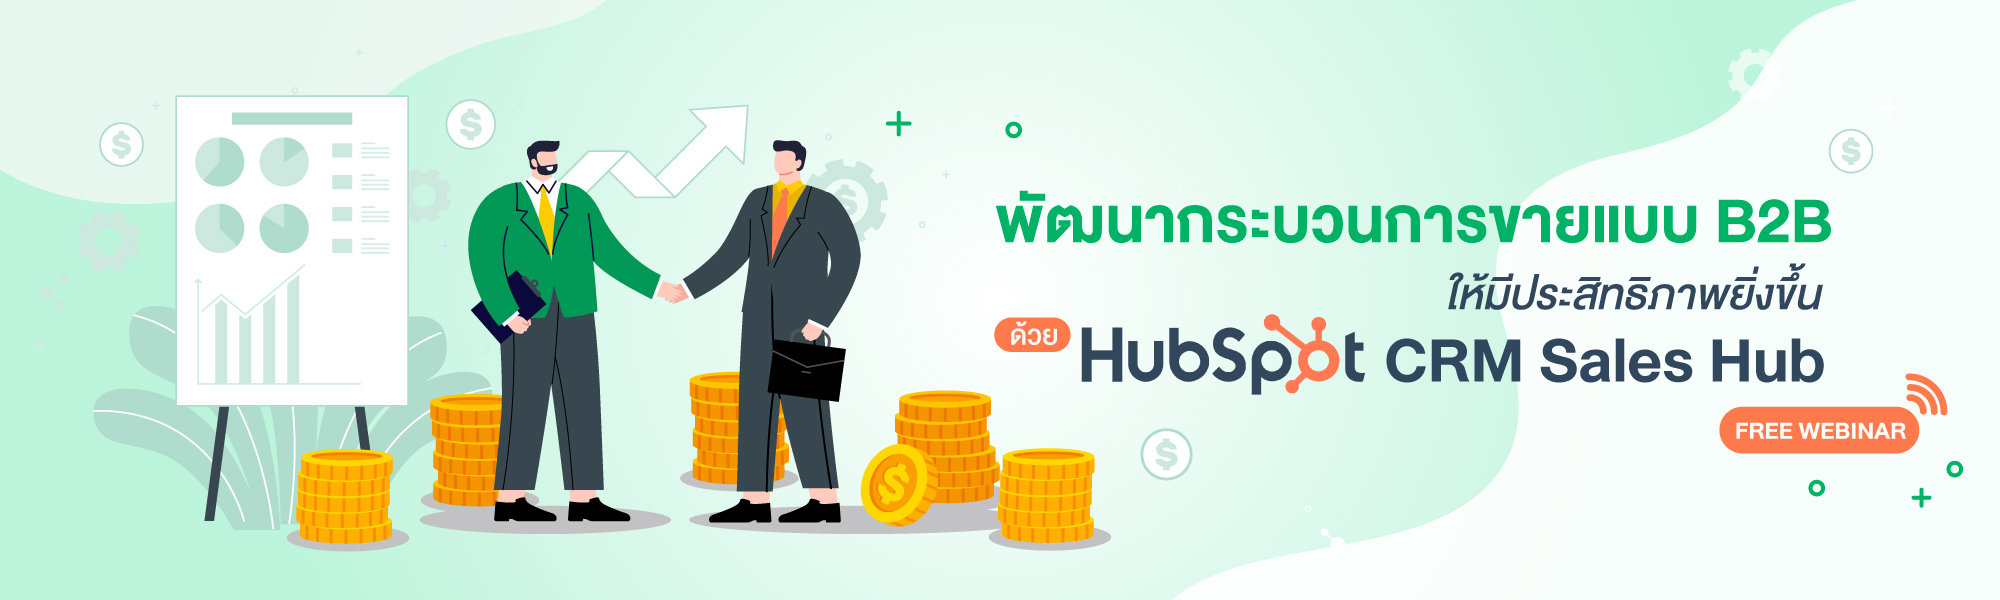 HubSpot CRM Sales Hub